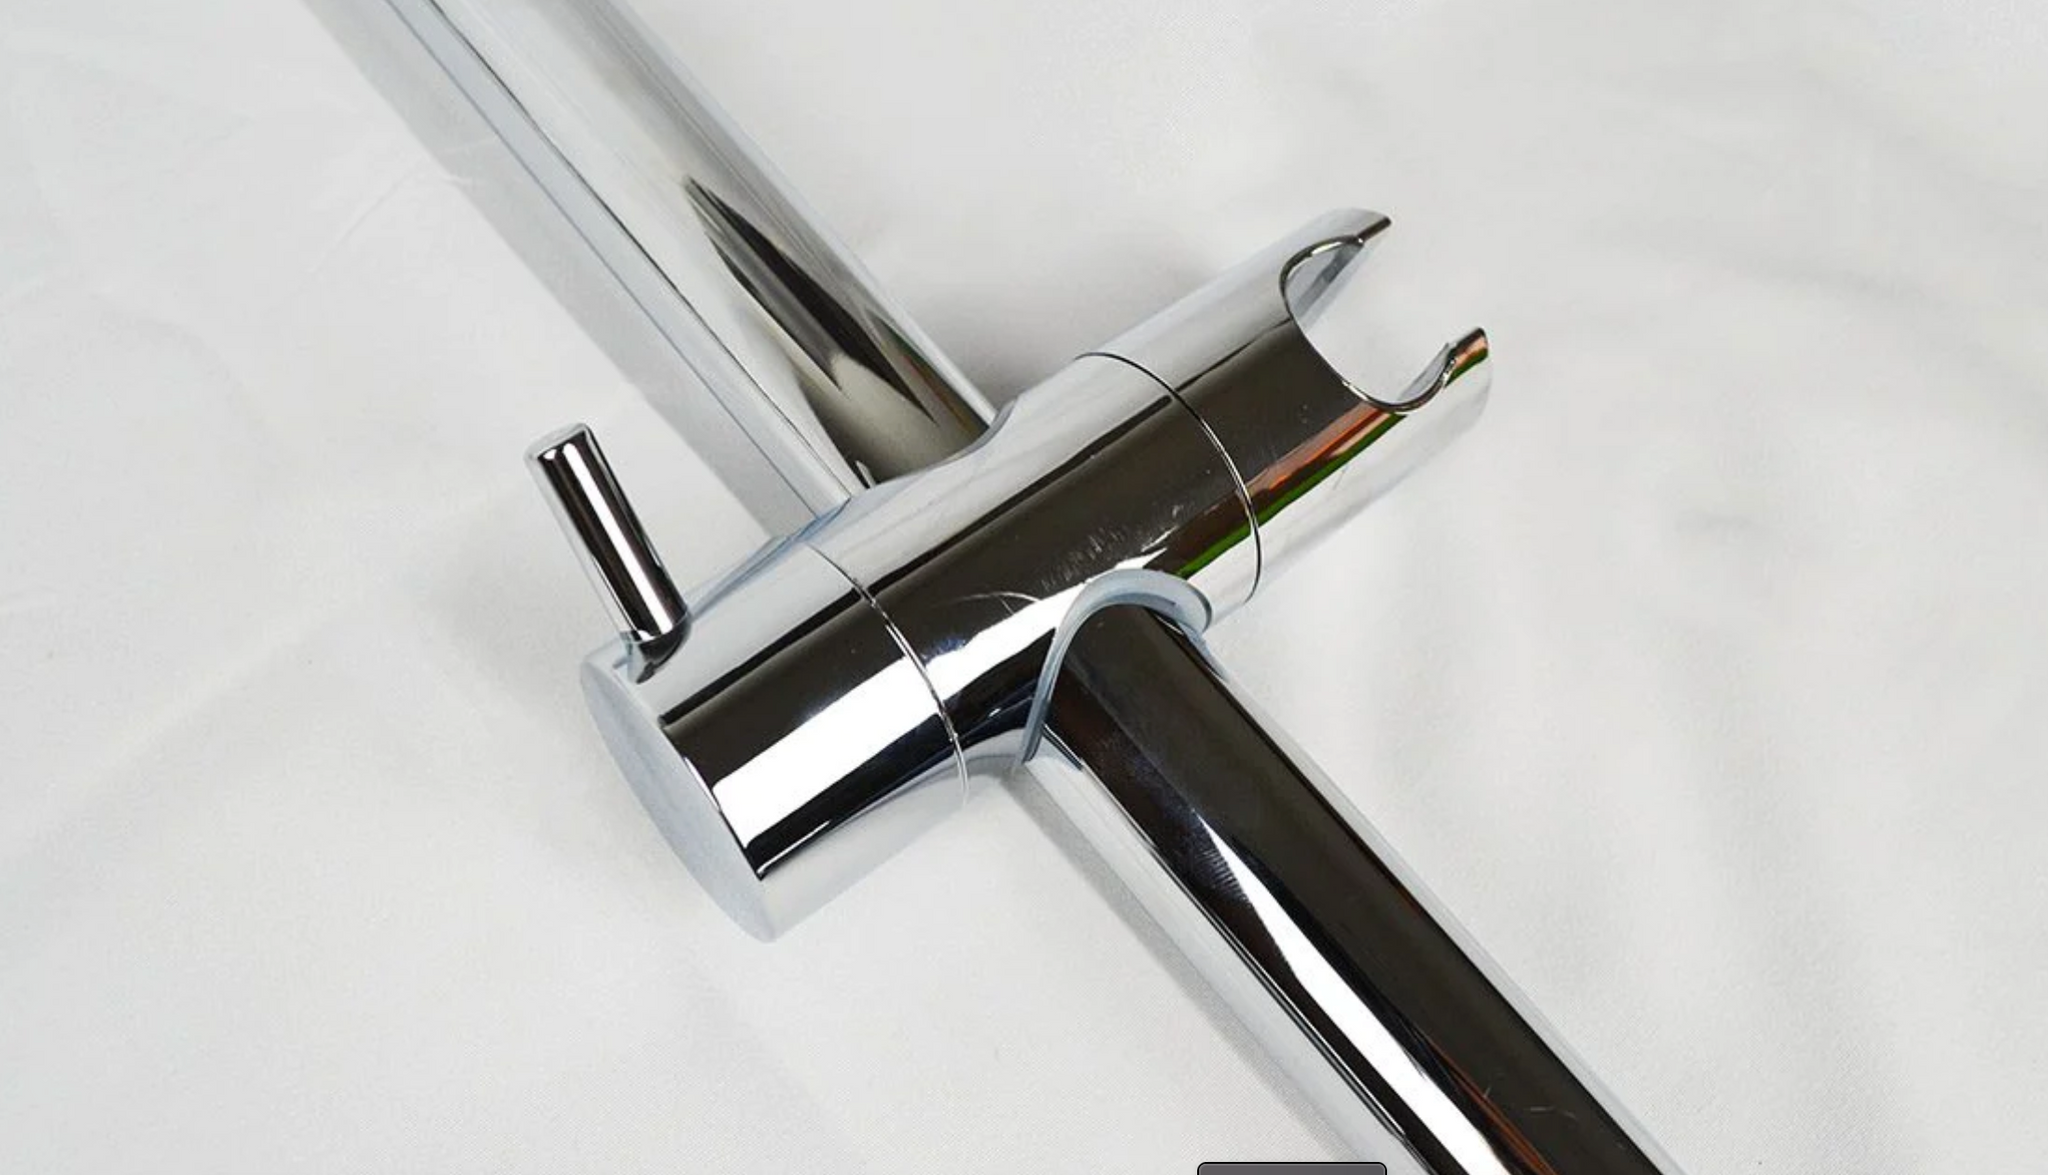 Asta saliscendi acciaio inox cromato Ø25 mm+ doccia 5 getti anticalcare e flessibile- SET DOCCIA PLUS